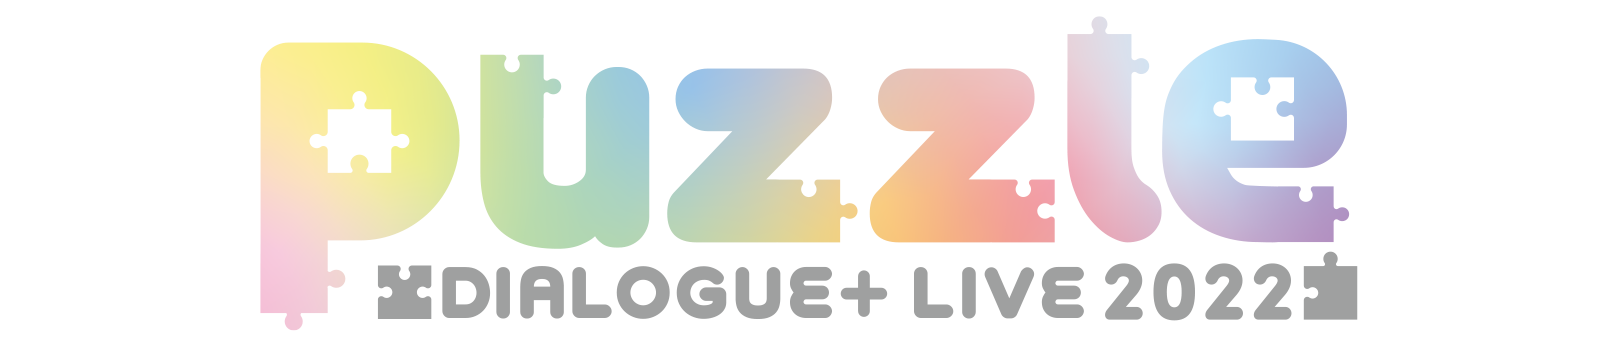 DIALOGUE＋ LIVE 2022「puzzle」